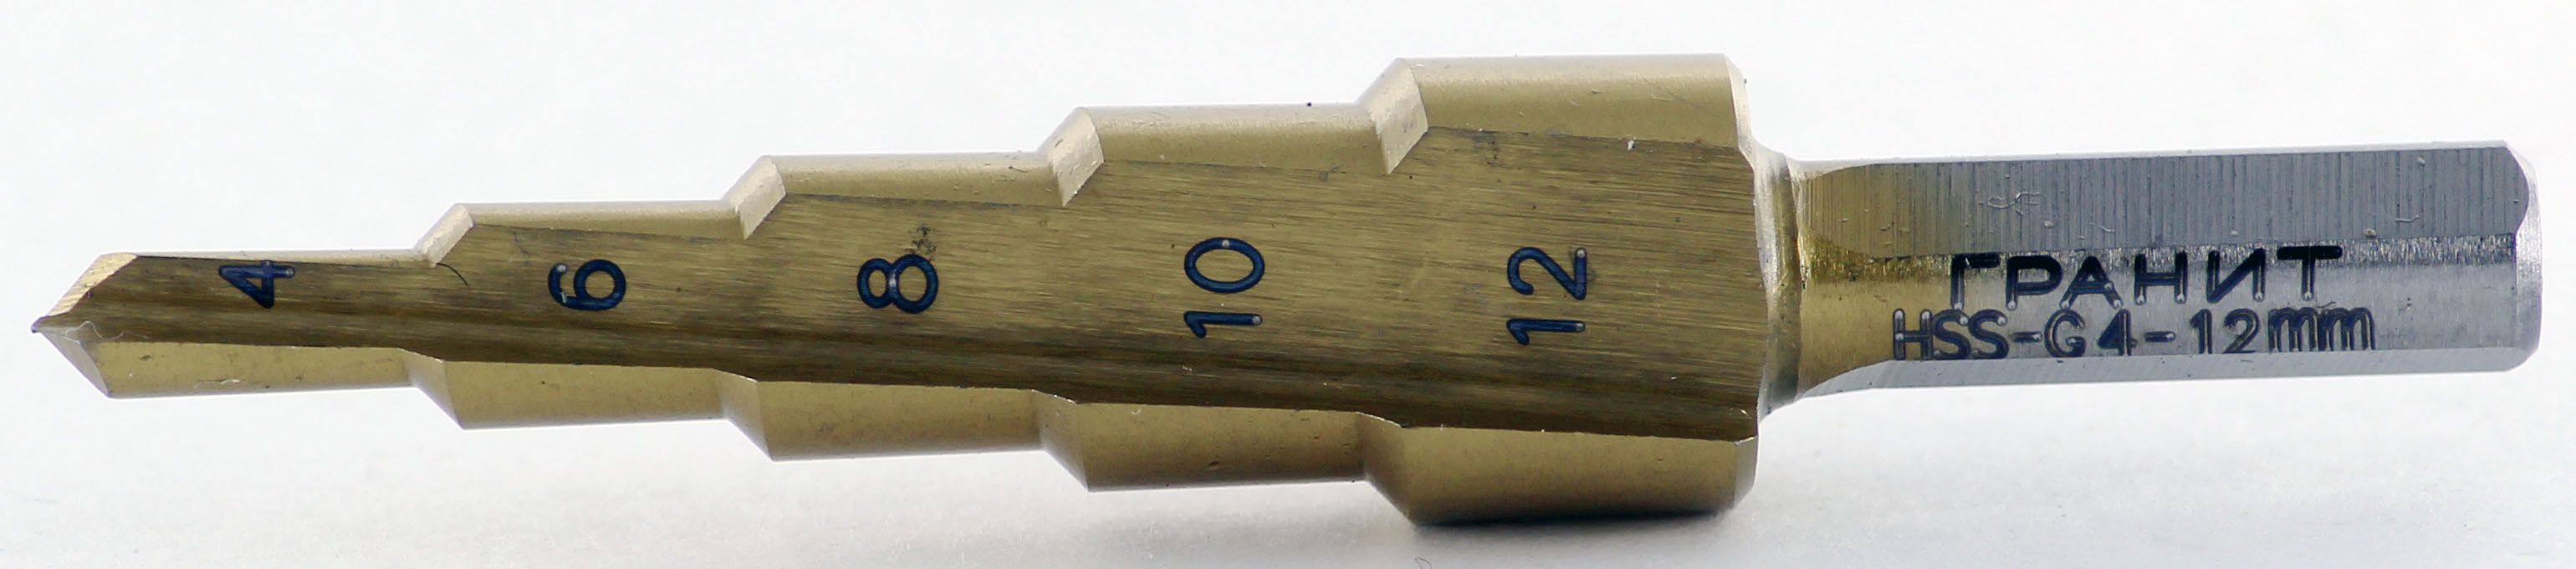 Сверло ступенчатое Гранит 4-12 мм